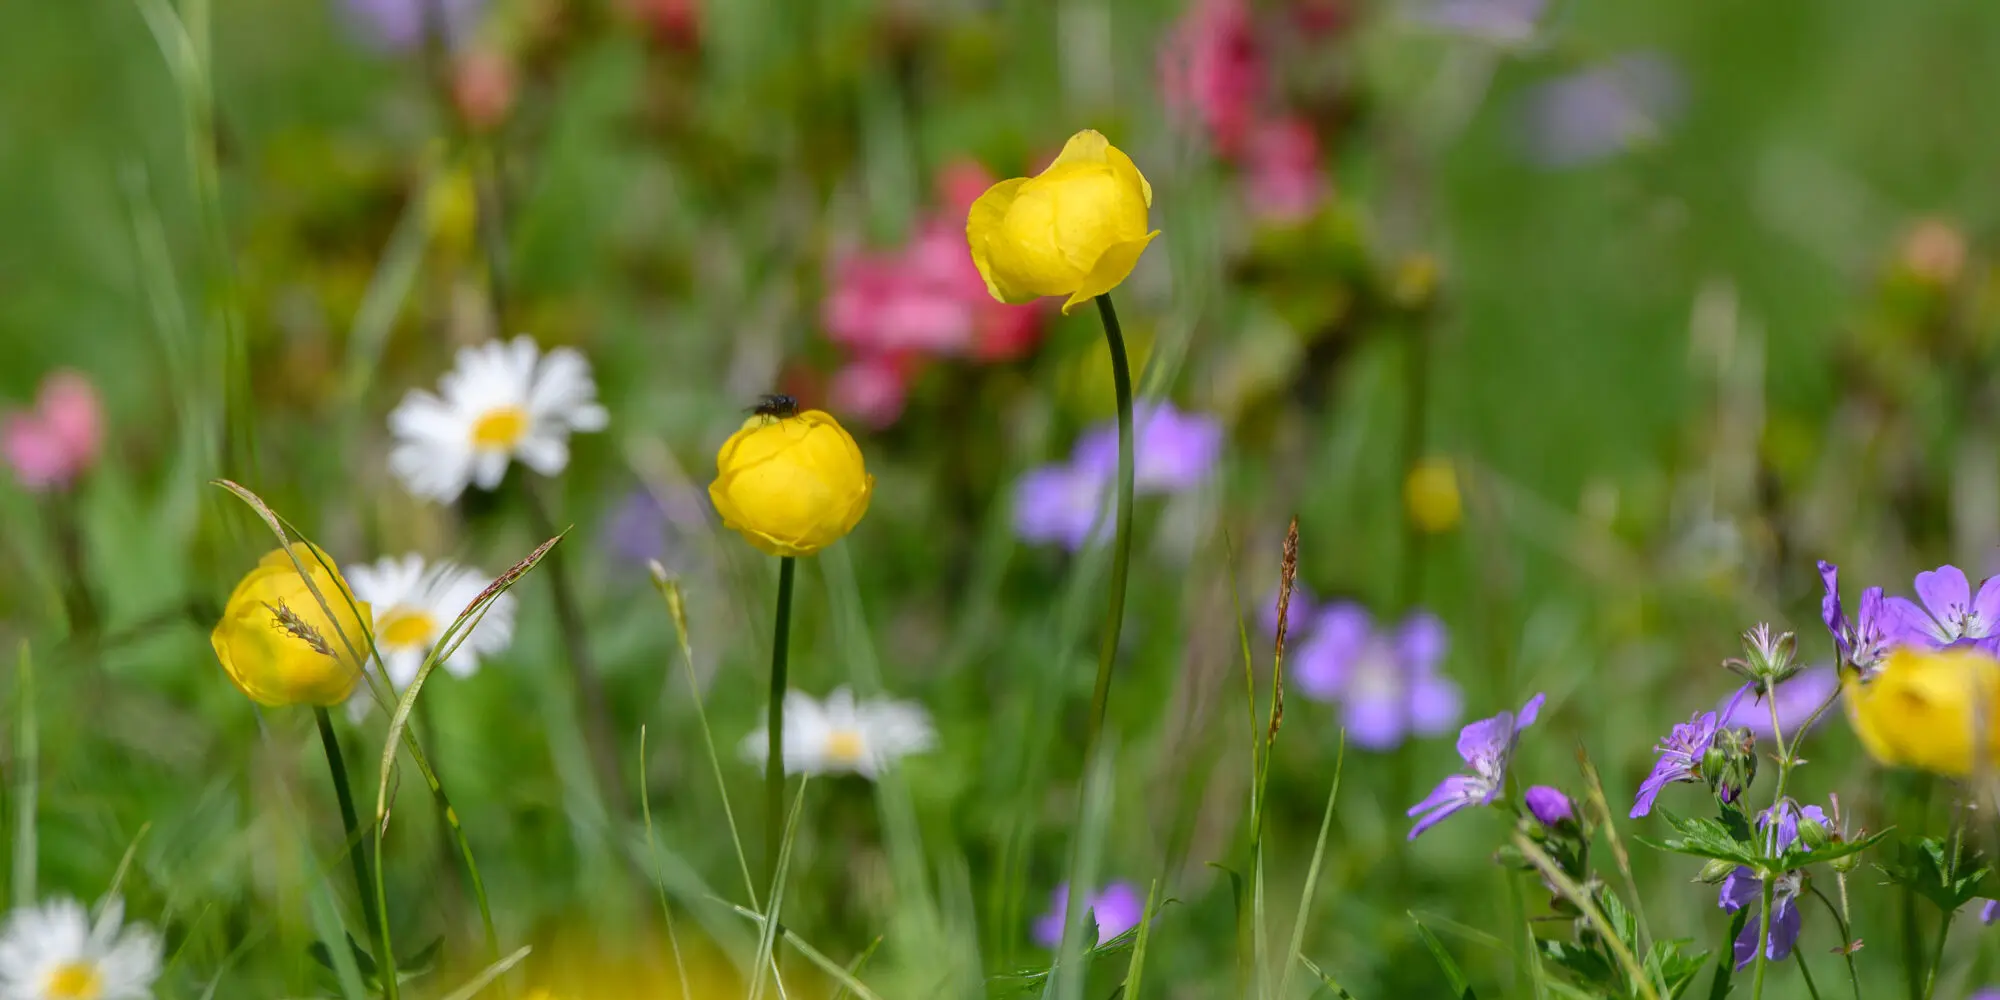 Farbige Blumenwiese mit Sumpfdotterblume, Storchschnabel und Margariten im Vordergrund